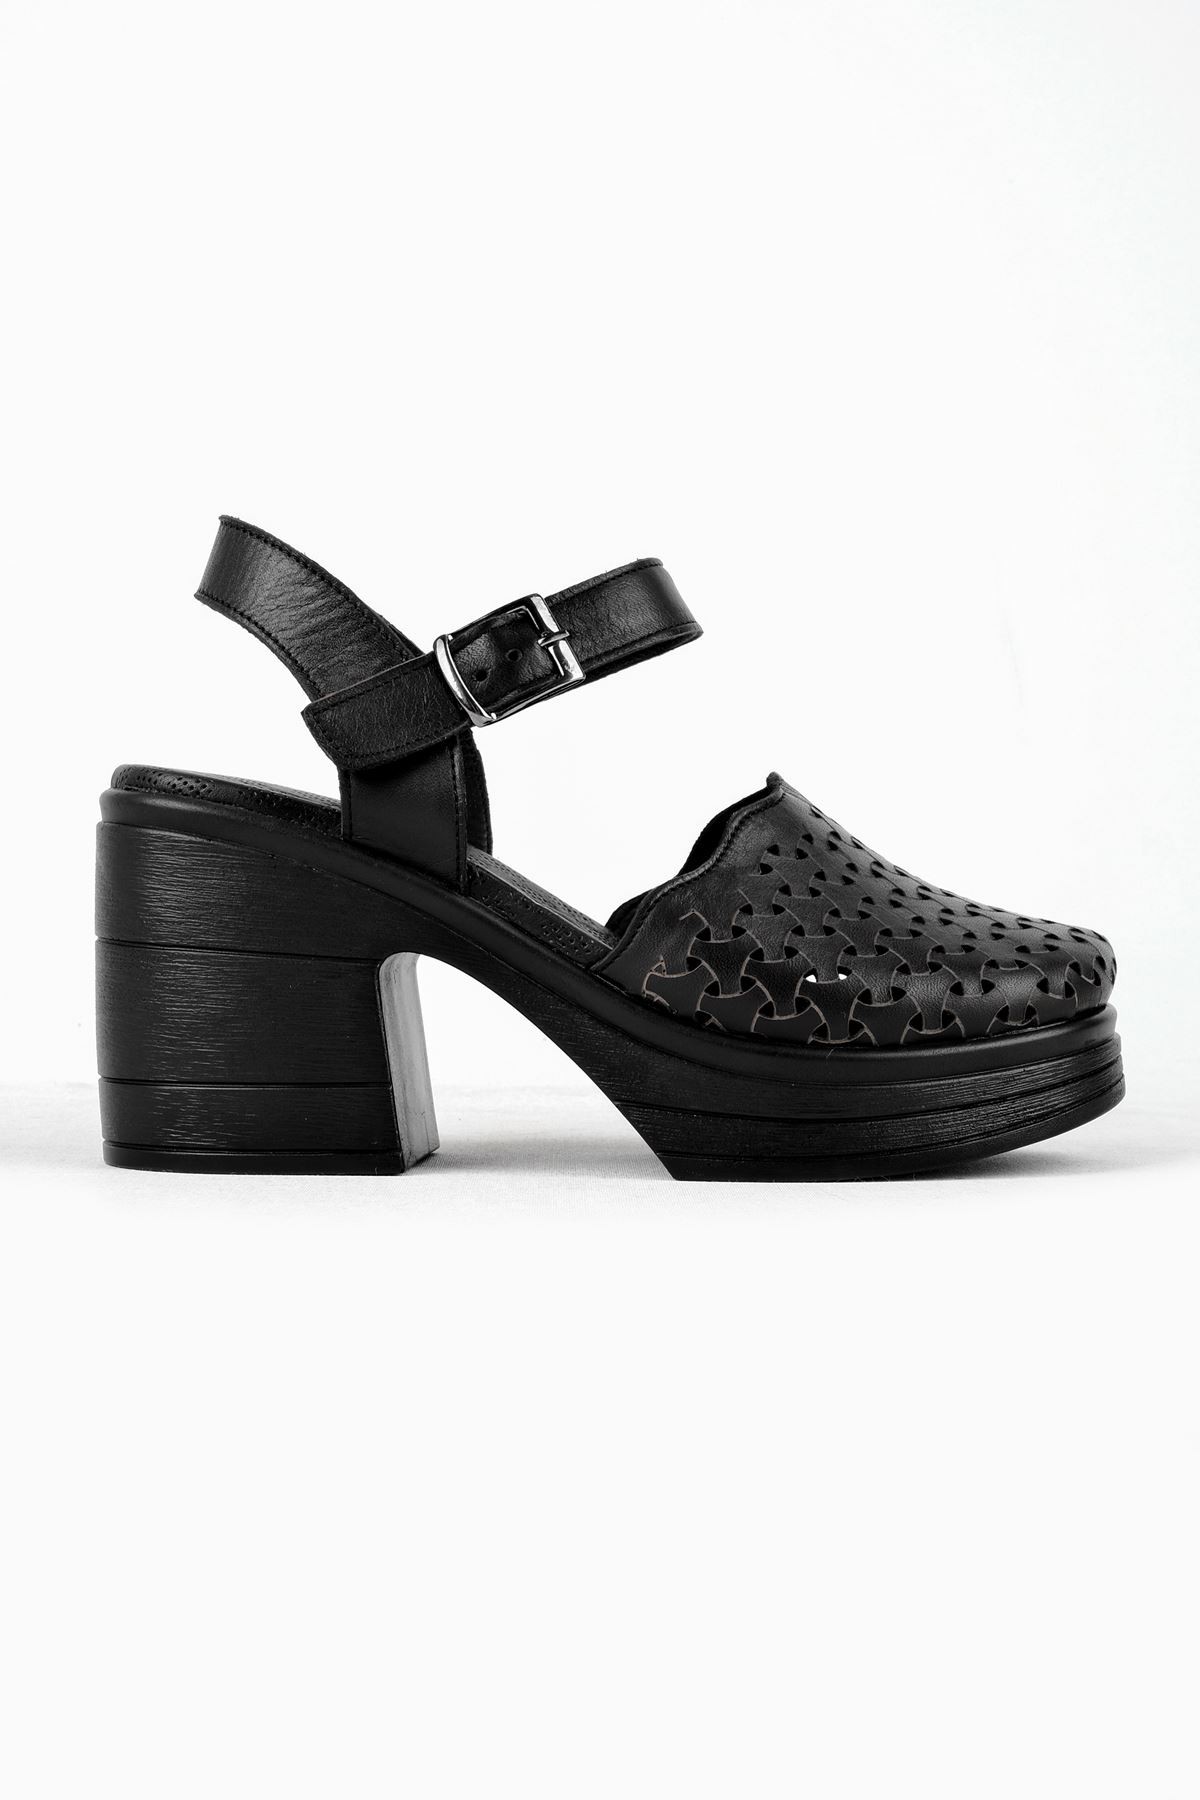 Kely Kadın Hakiki Deri Desenli Önü Kapalı Topuklu Sandalet (B3121) - Siyah